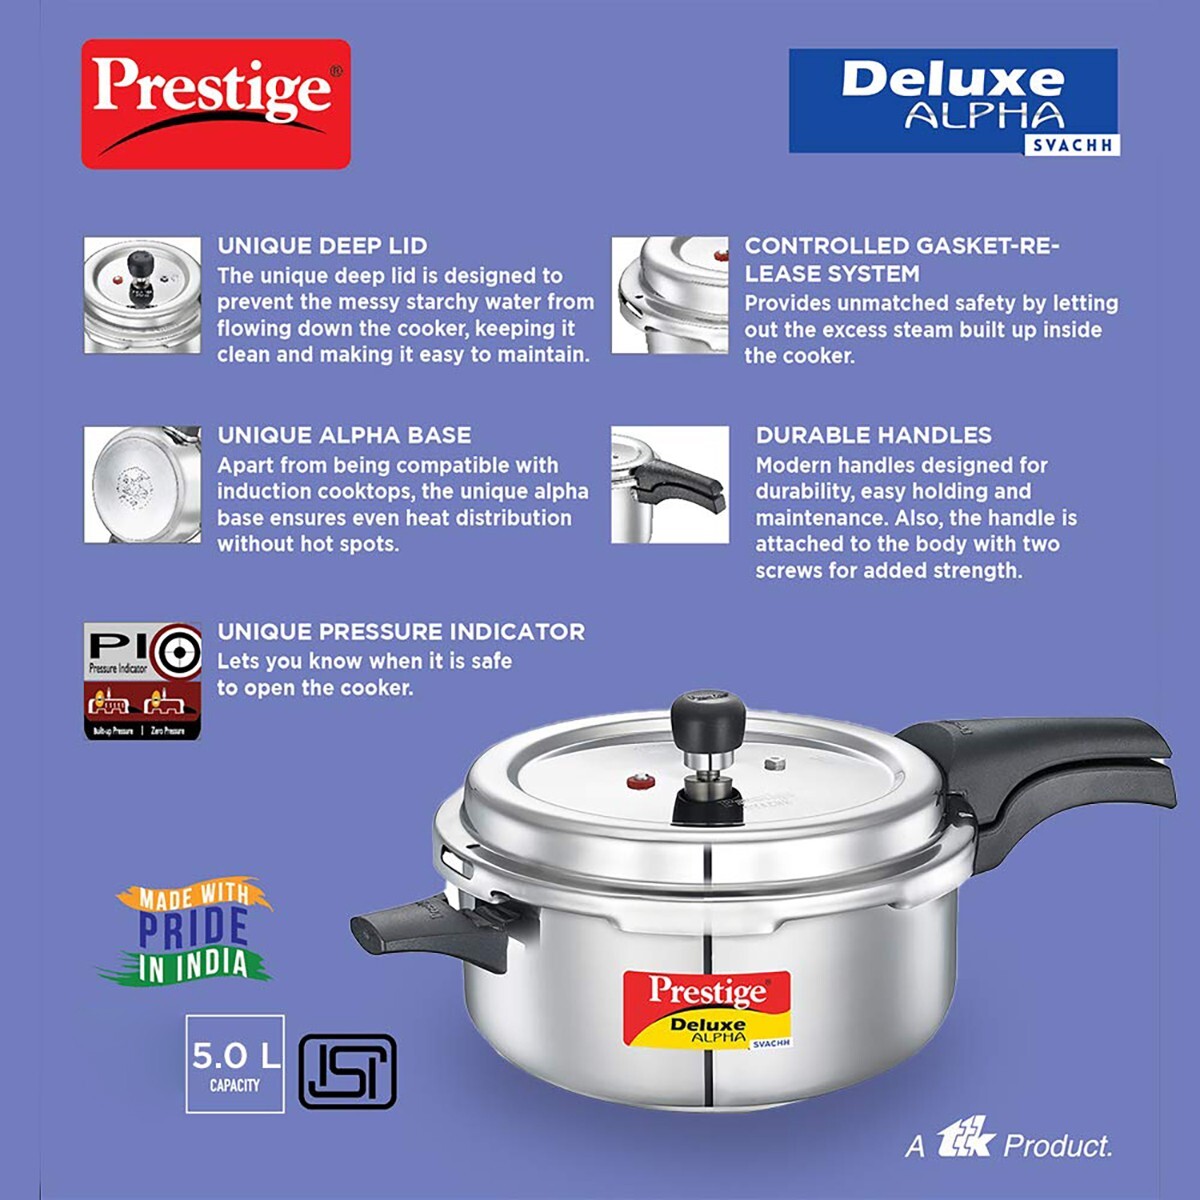 Prestige Stainless Steel Pressure Cooker Svachh Alpha Deep Pressure Pan